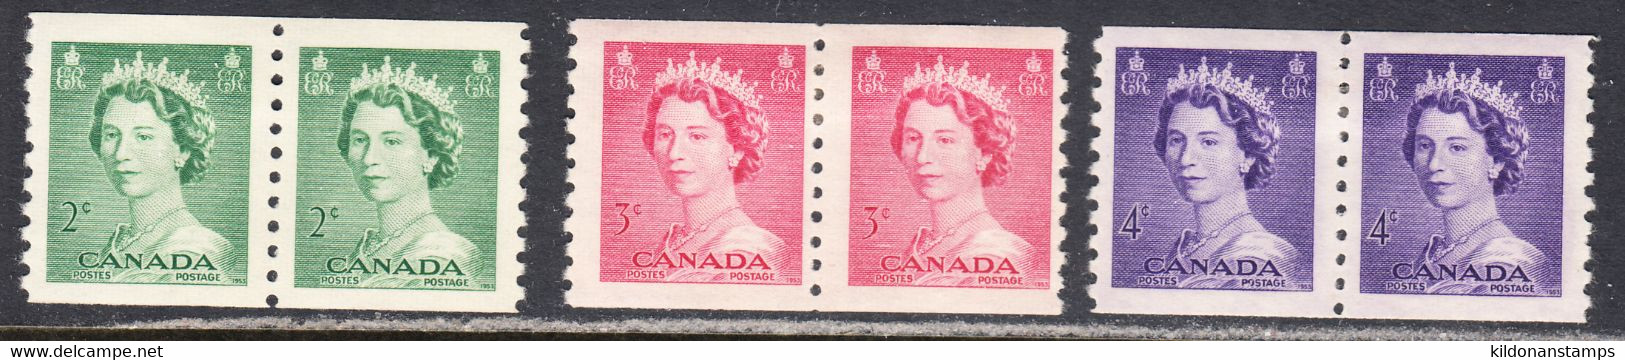 Canada 1953 Coils, Mint Mounted, Sc# 331-333, SG - Rollo De Sellos